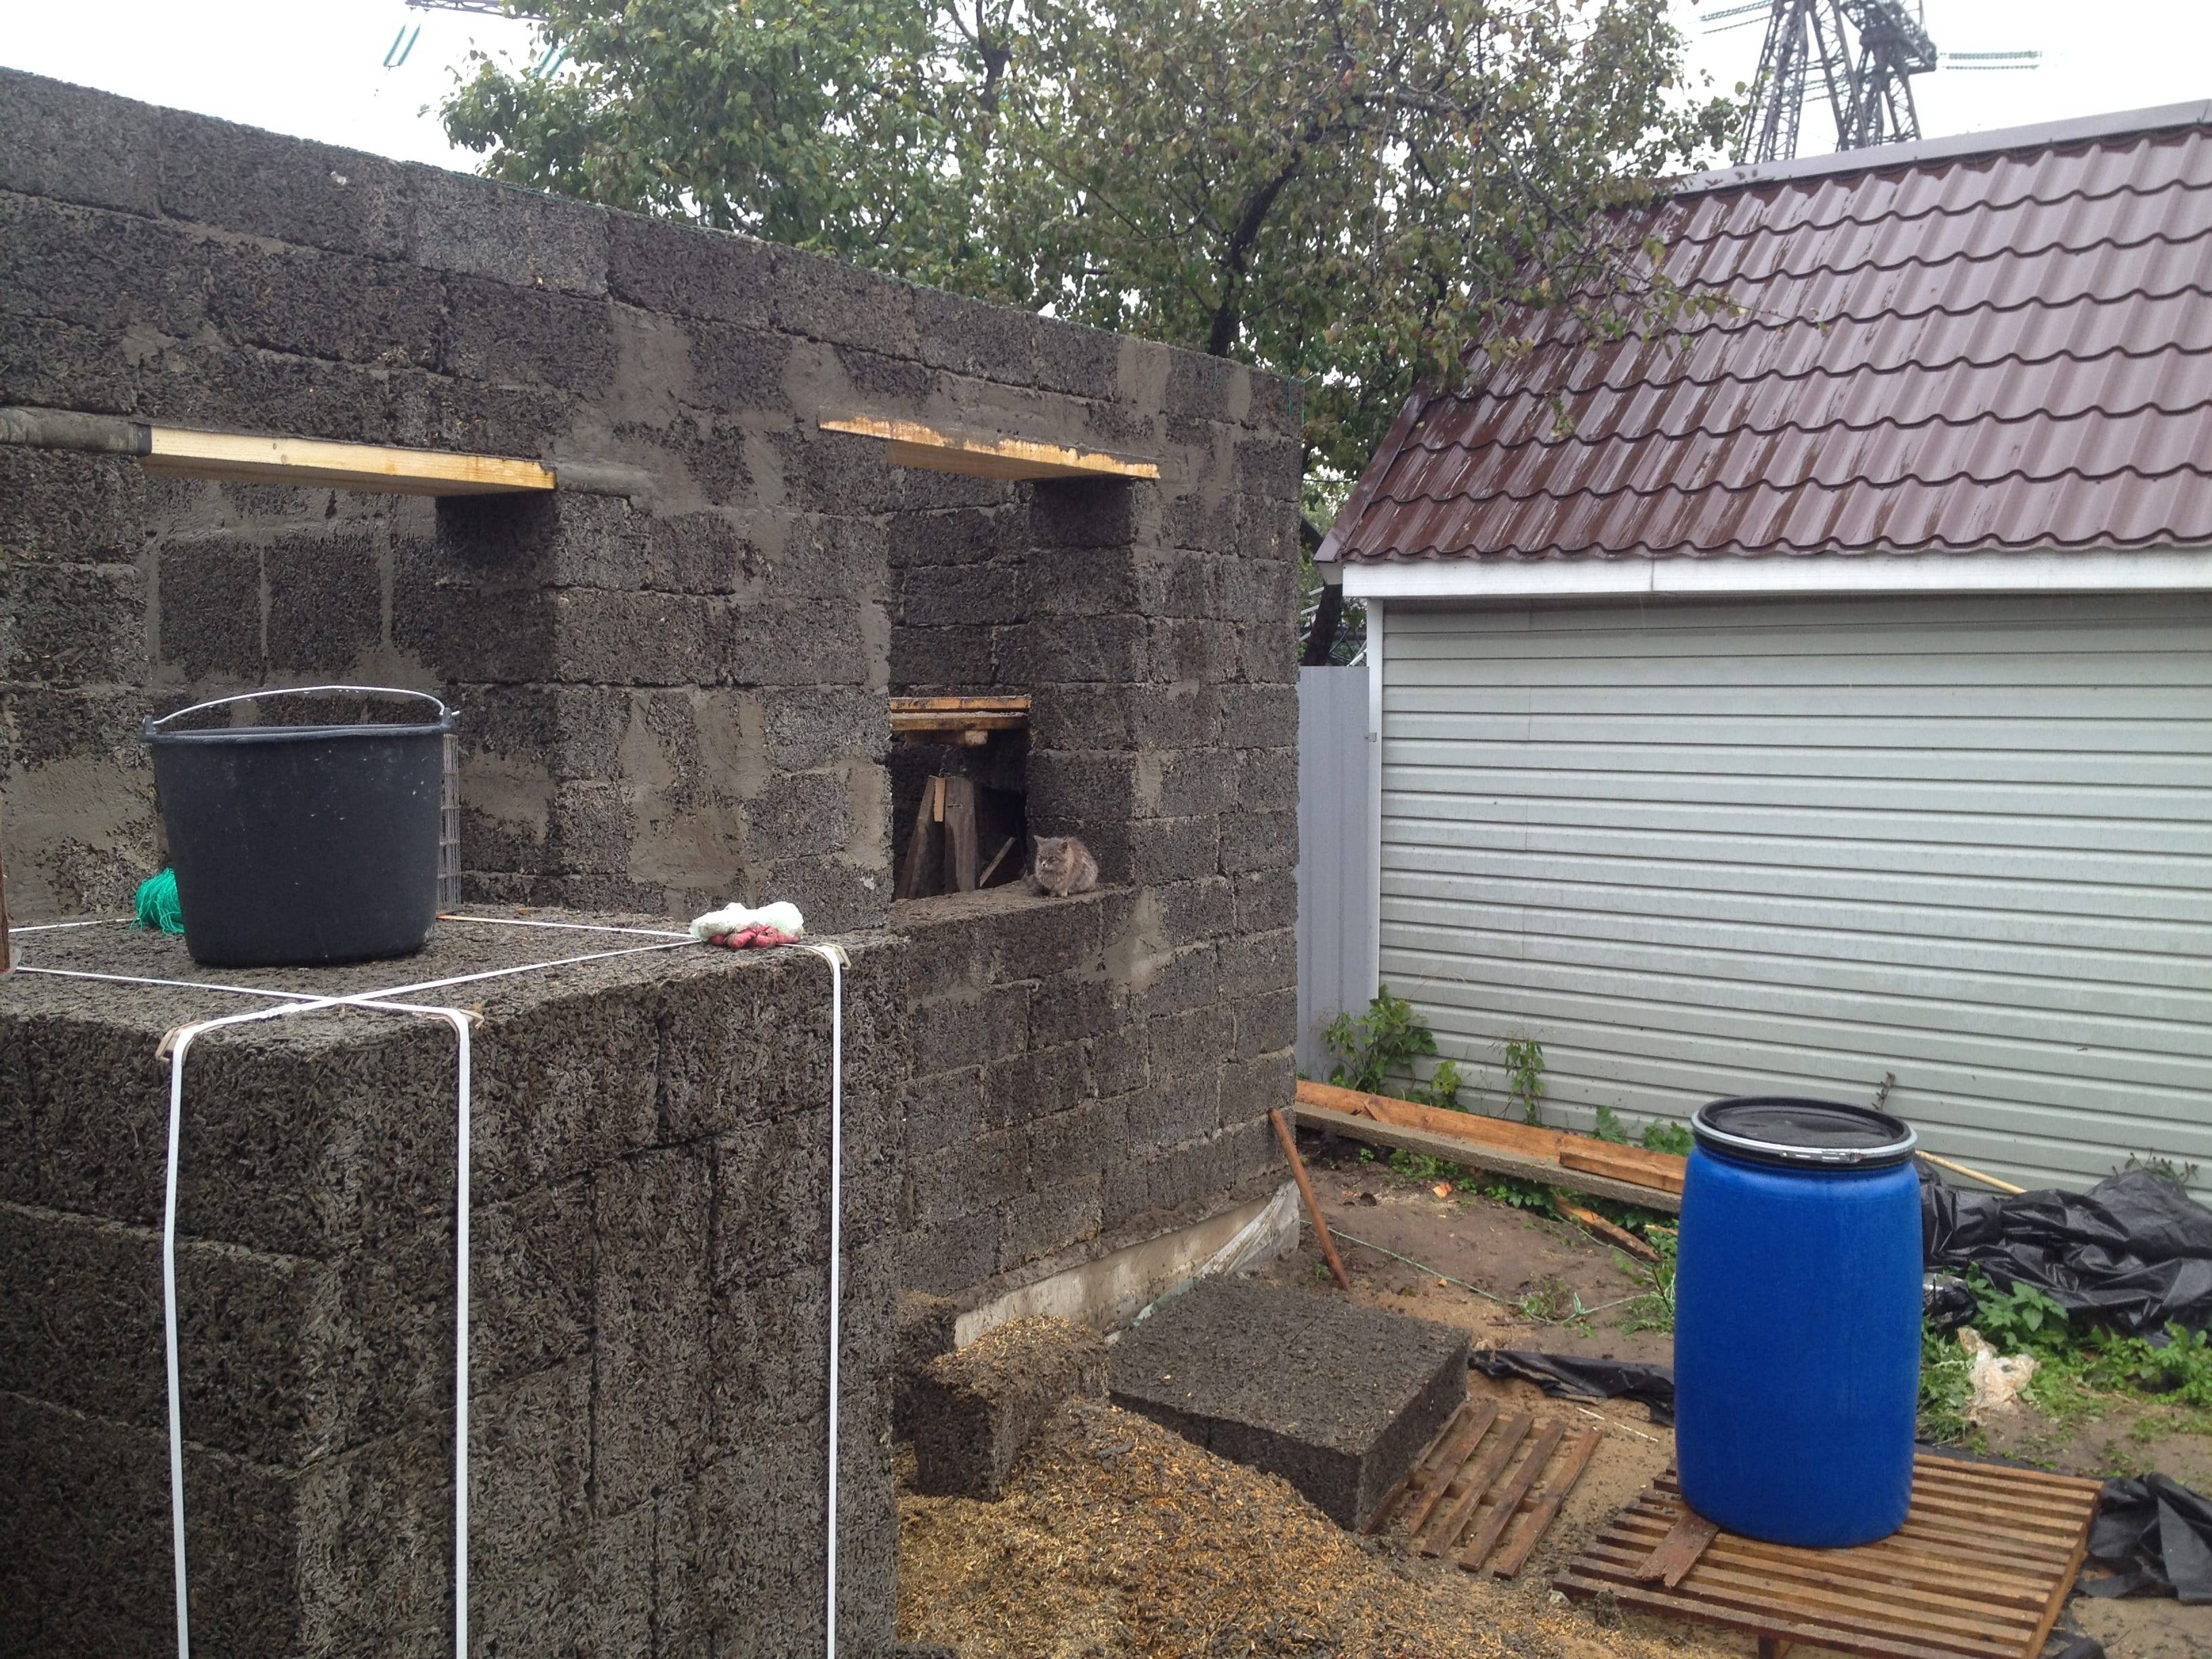 Дом из арболита (32 фото): плюсы и минусы строительства из арболитовых блоков, проекты. как построить дом своими руками? отзывы владельцев